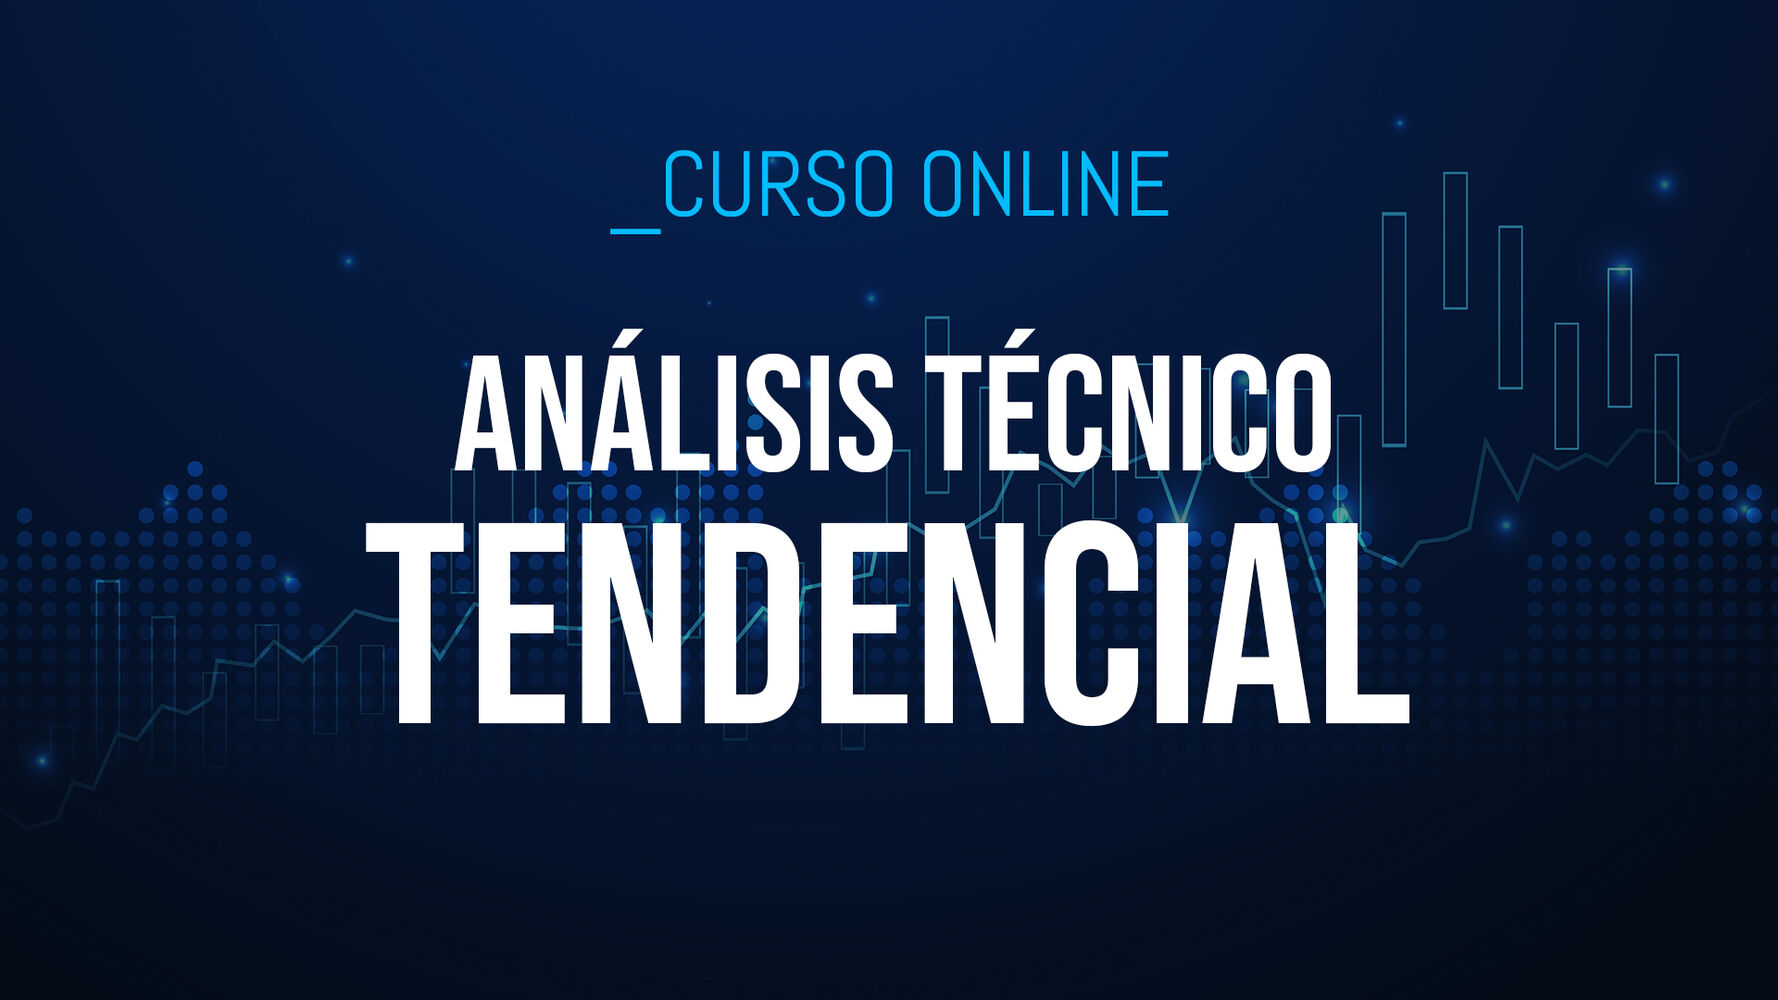 Análisis Técnico Tendencial: Aprende a una metodología que invierte a favor de tendencia